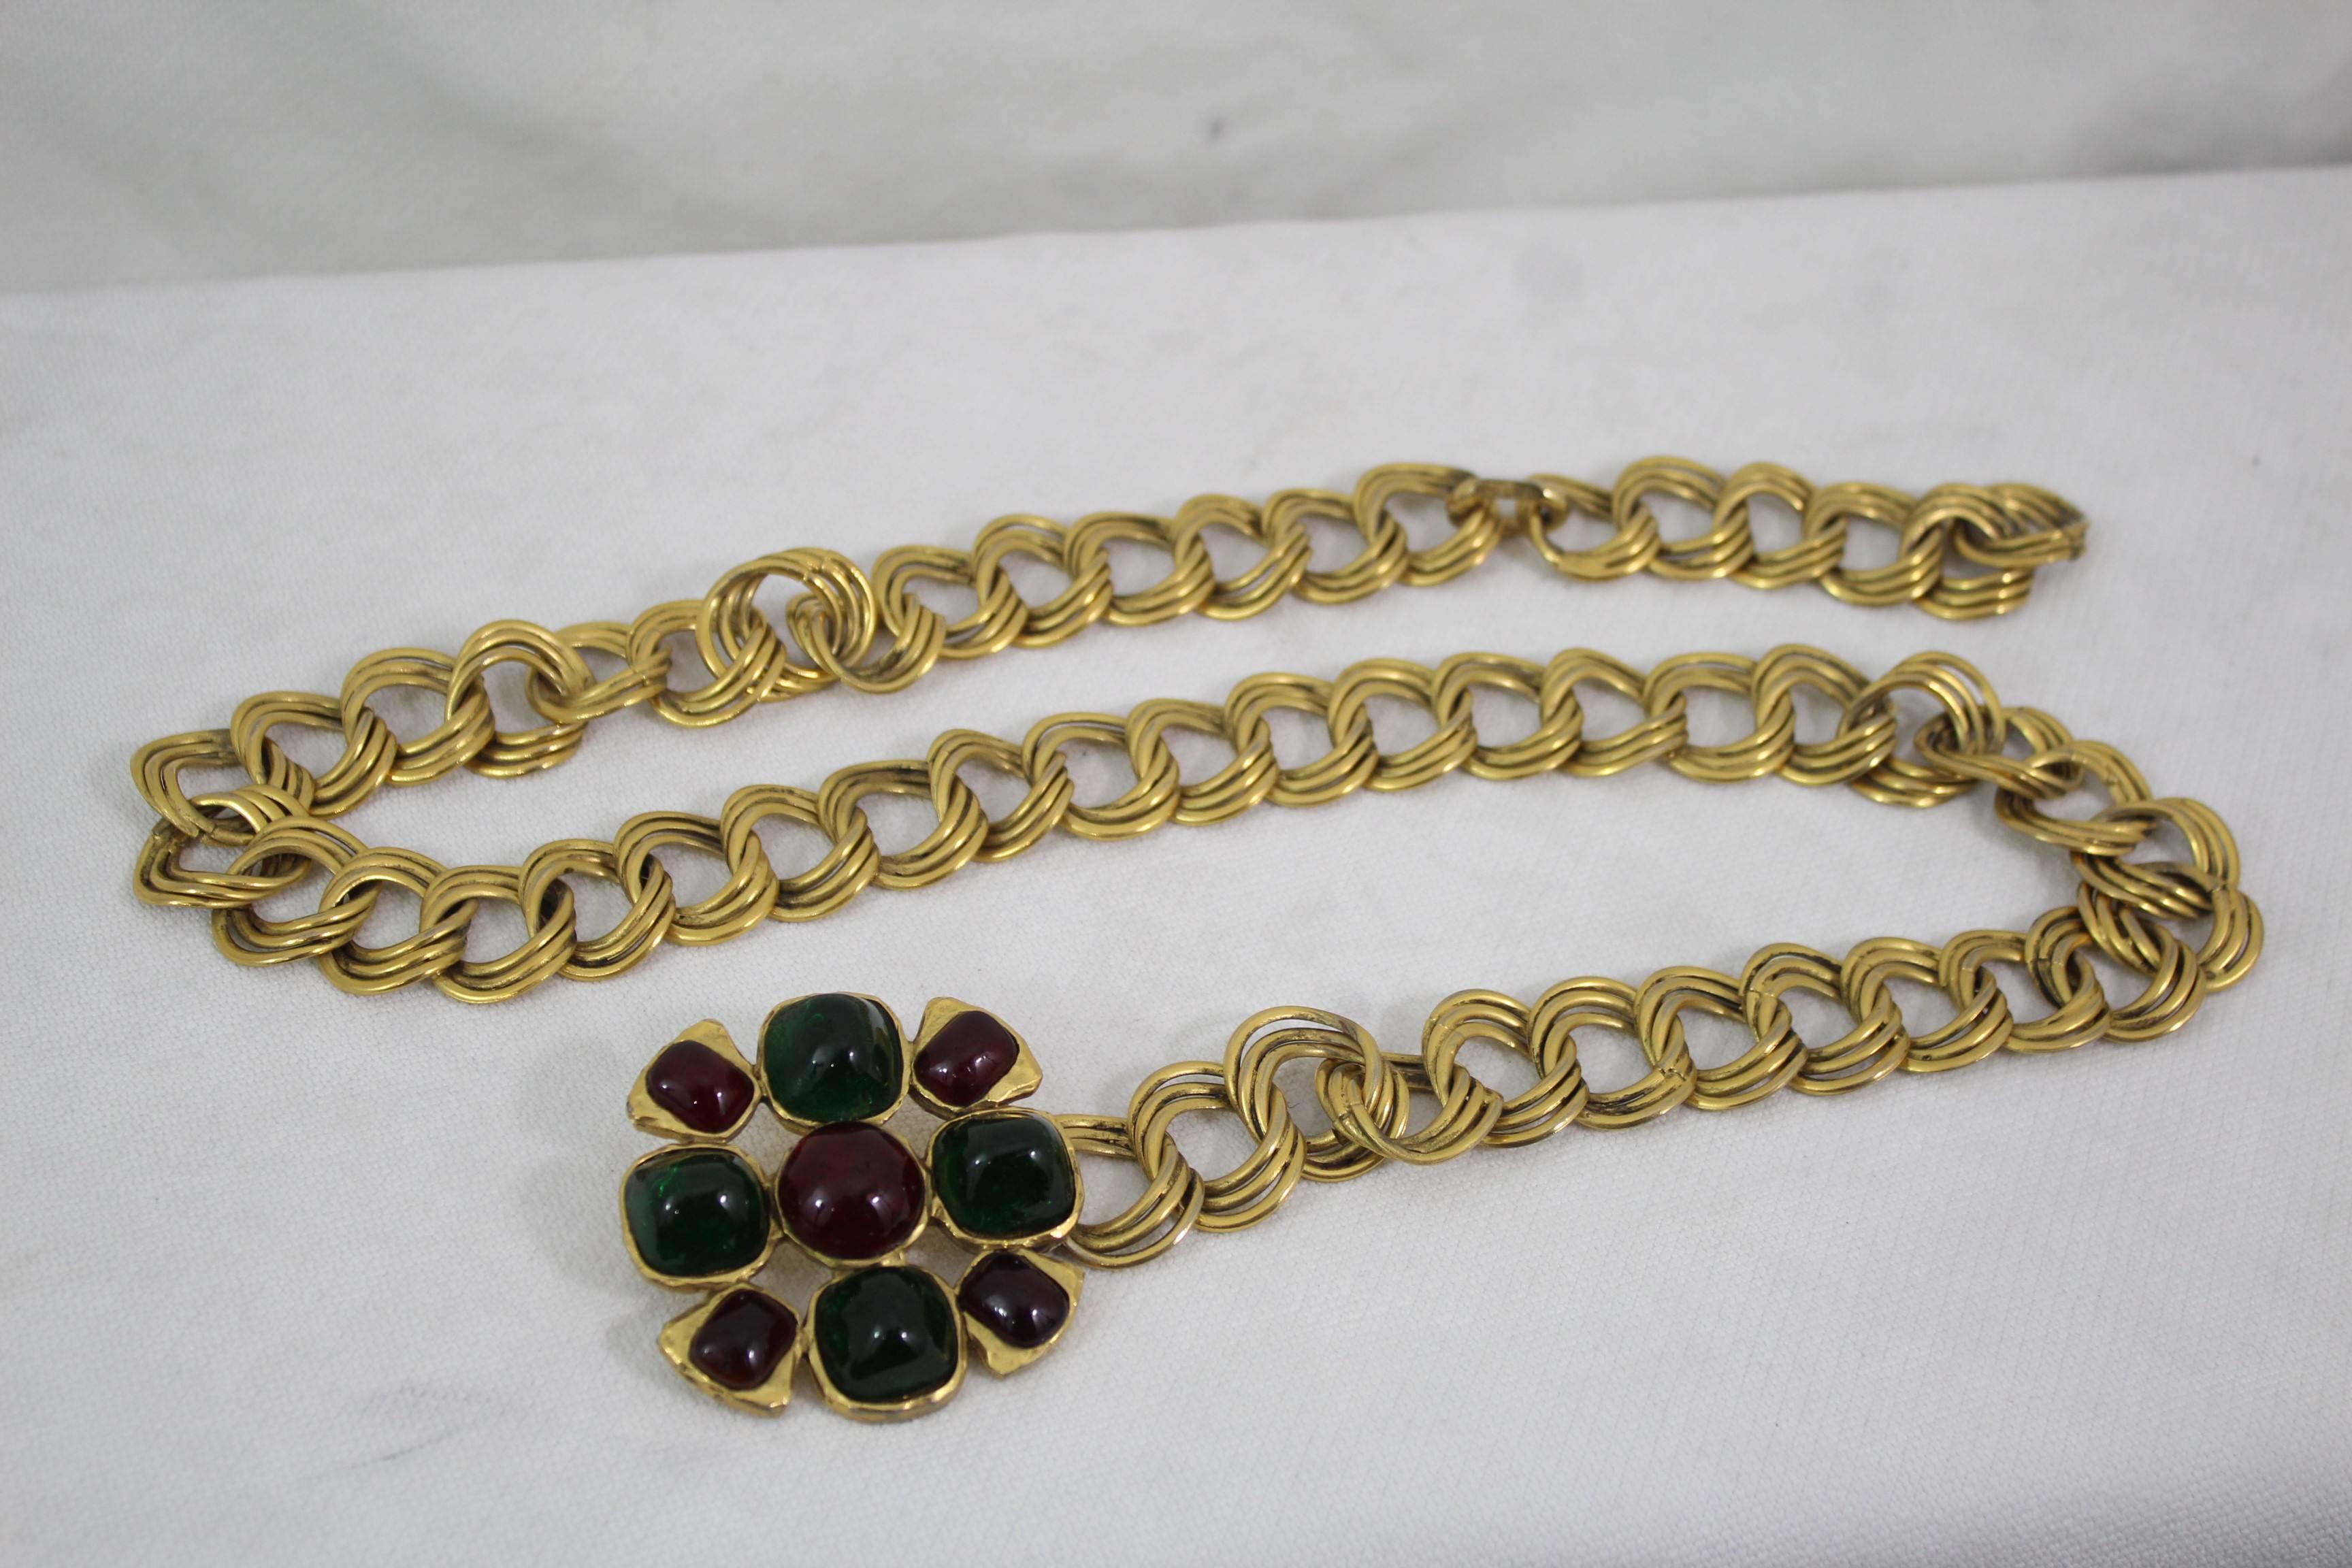 Women's or Men's Vintage Chanel Gripoix Belt / Necklace in Golden Metal